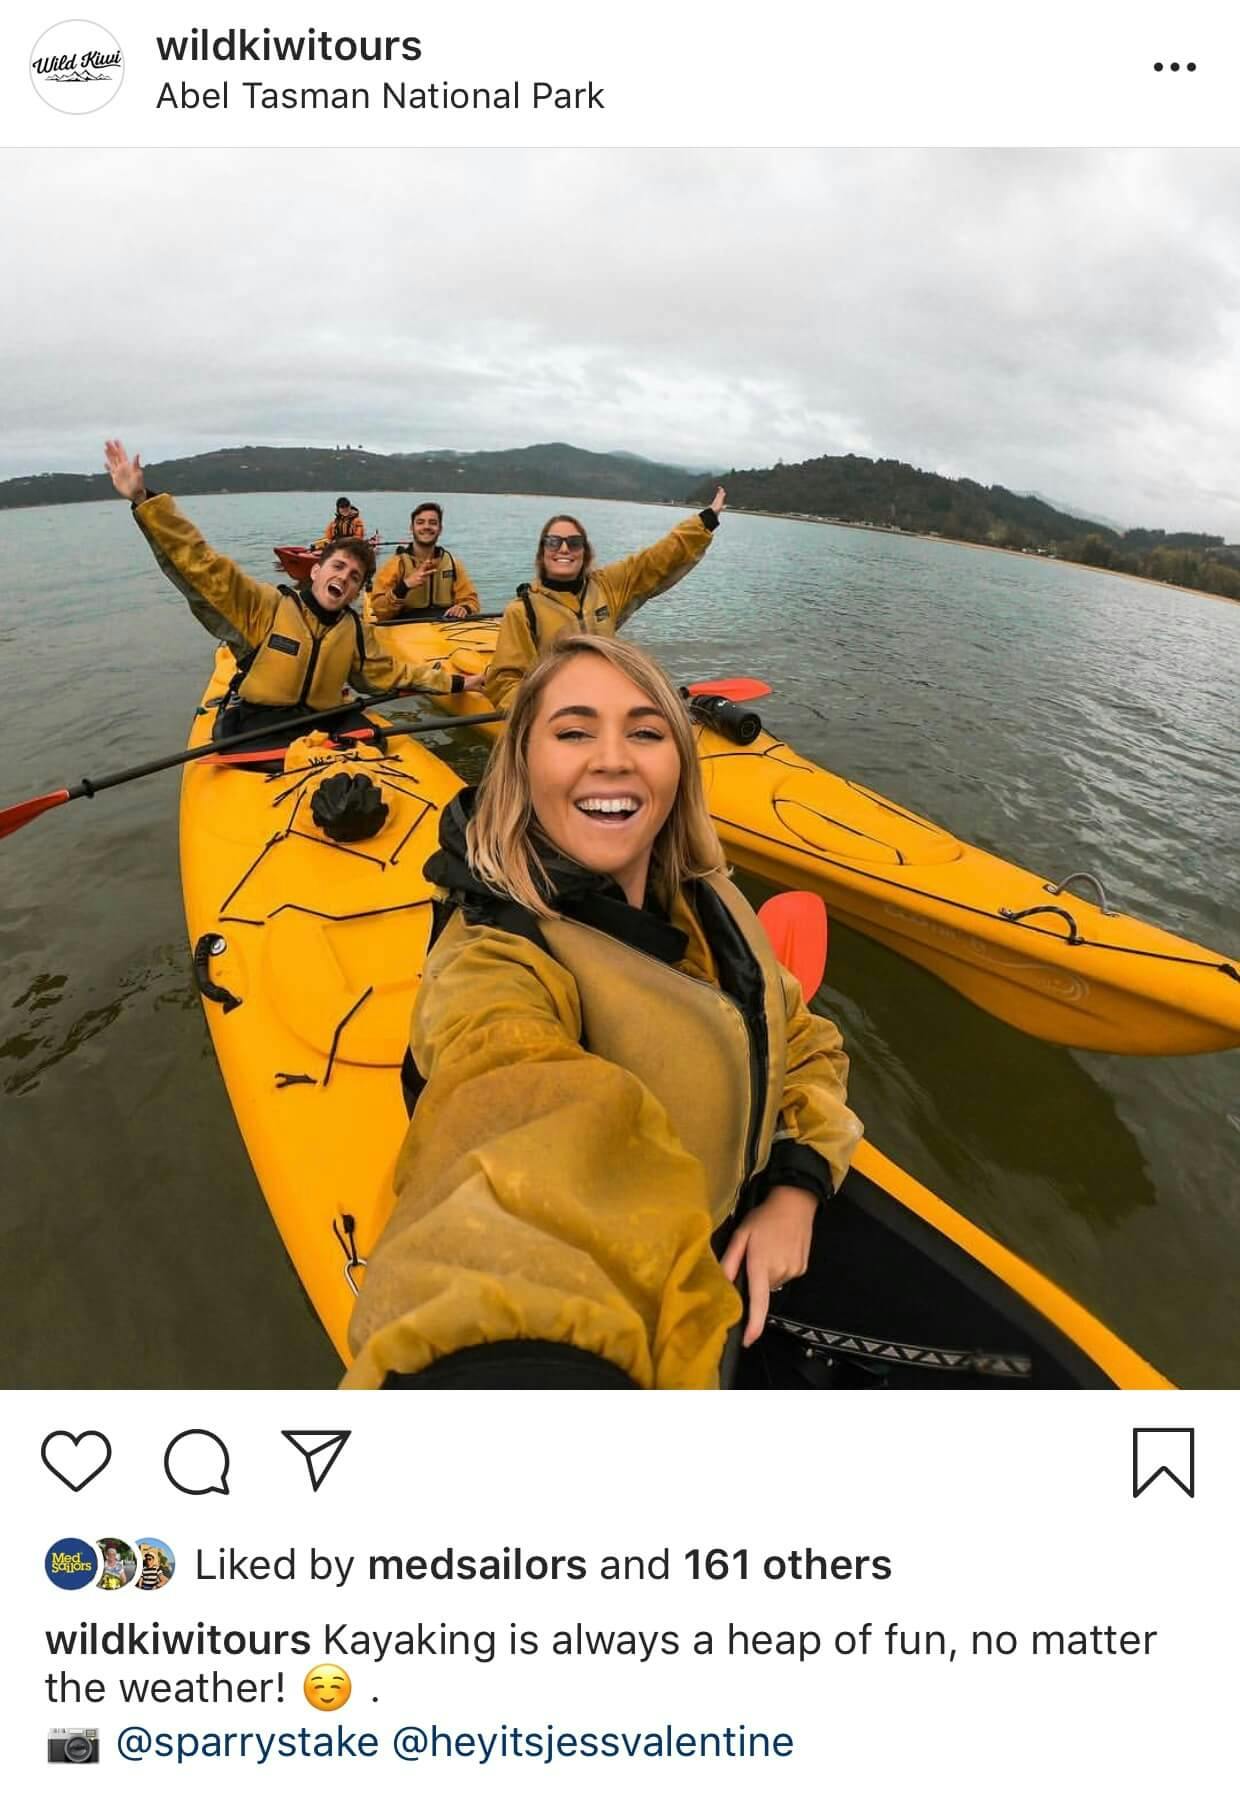 wildkiwi_kayaking_abeltasman_southernloop